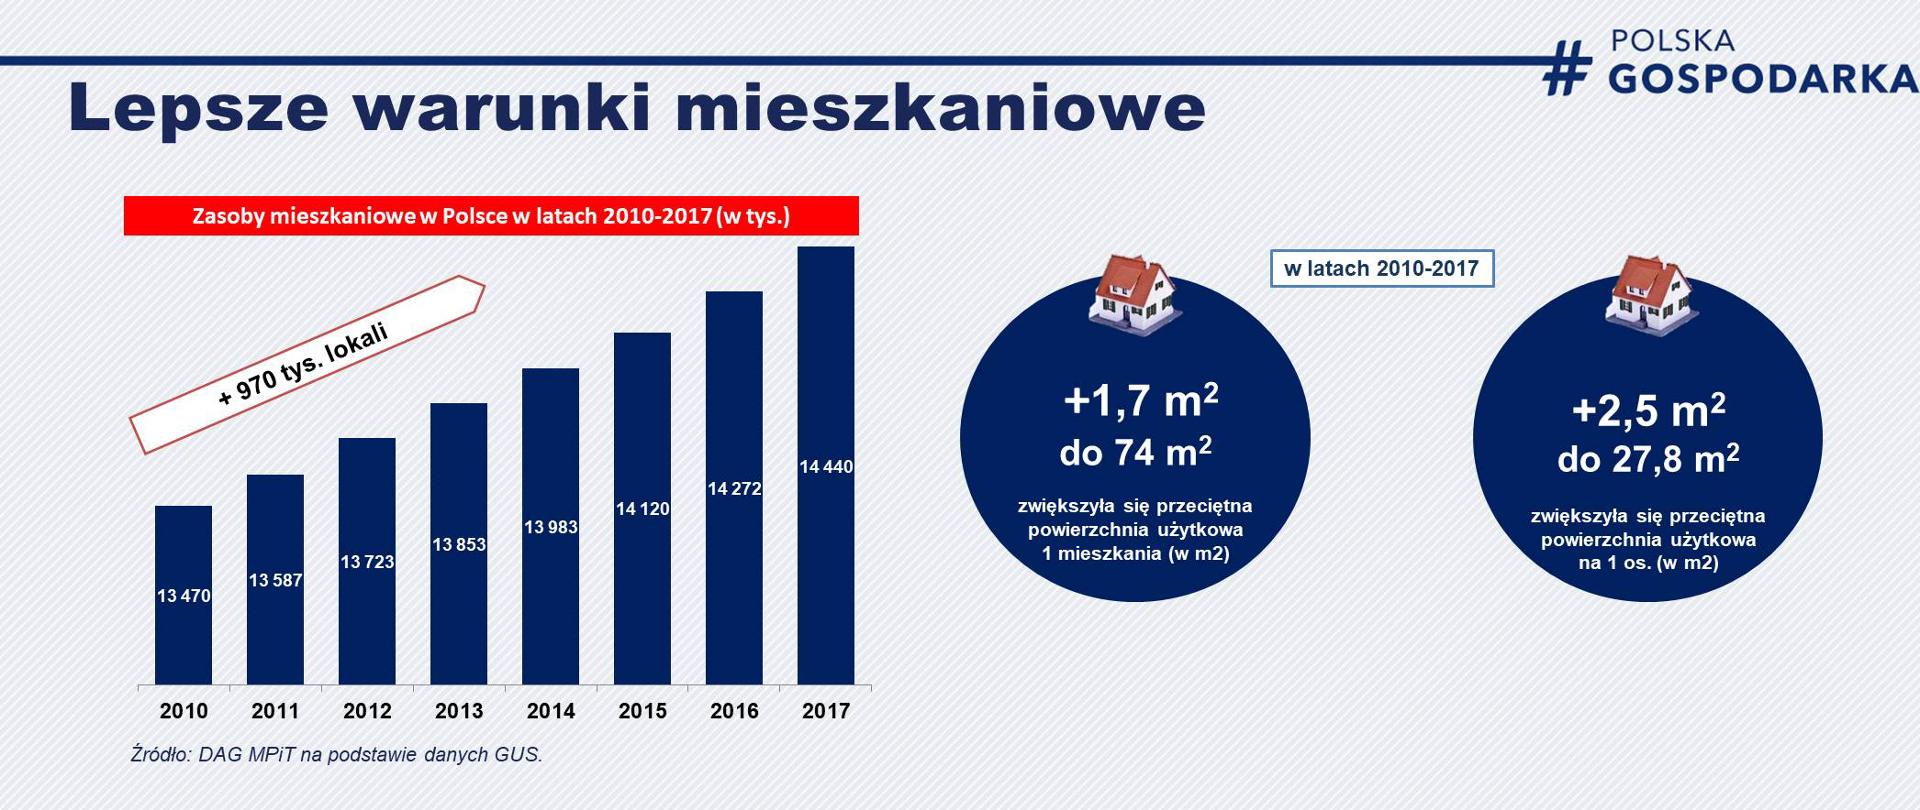 Grafika przedstawia wykres pokazujący, jak kolejno w latach 2010-2020 zwiększały się zasoby mieszkaniowe w Polsce. A także informacje, jak zwiększyła się przeciętna powierzchnia użytkowa mieszkań.